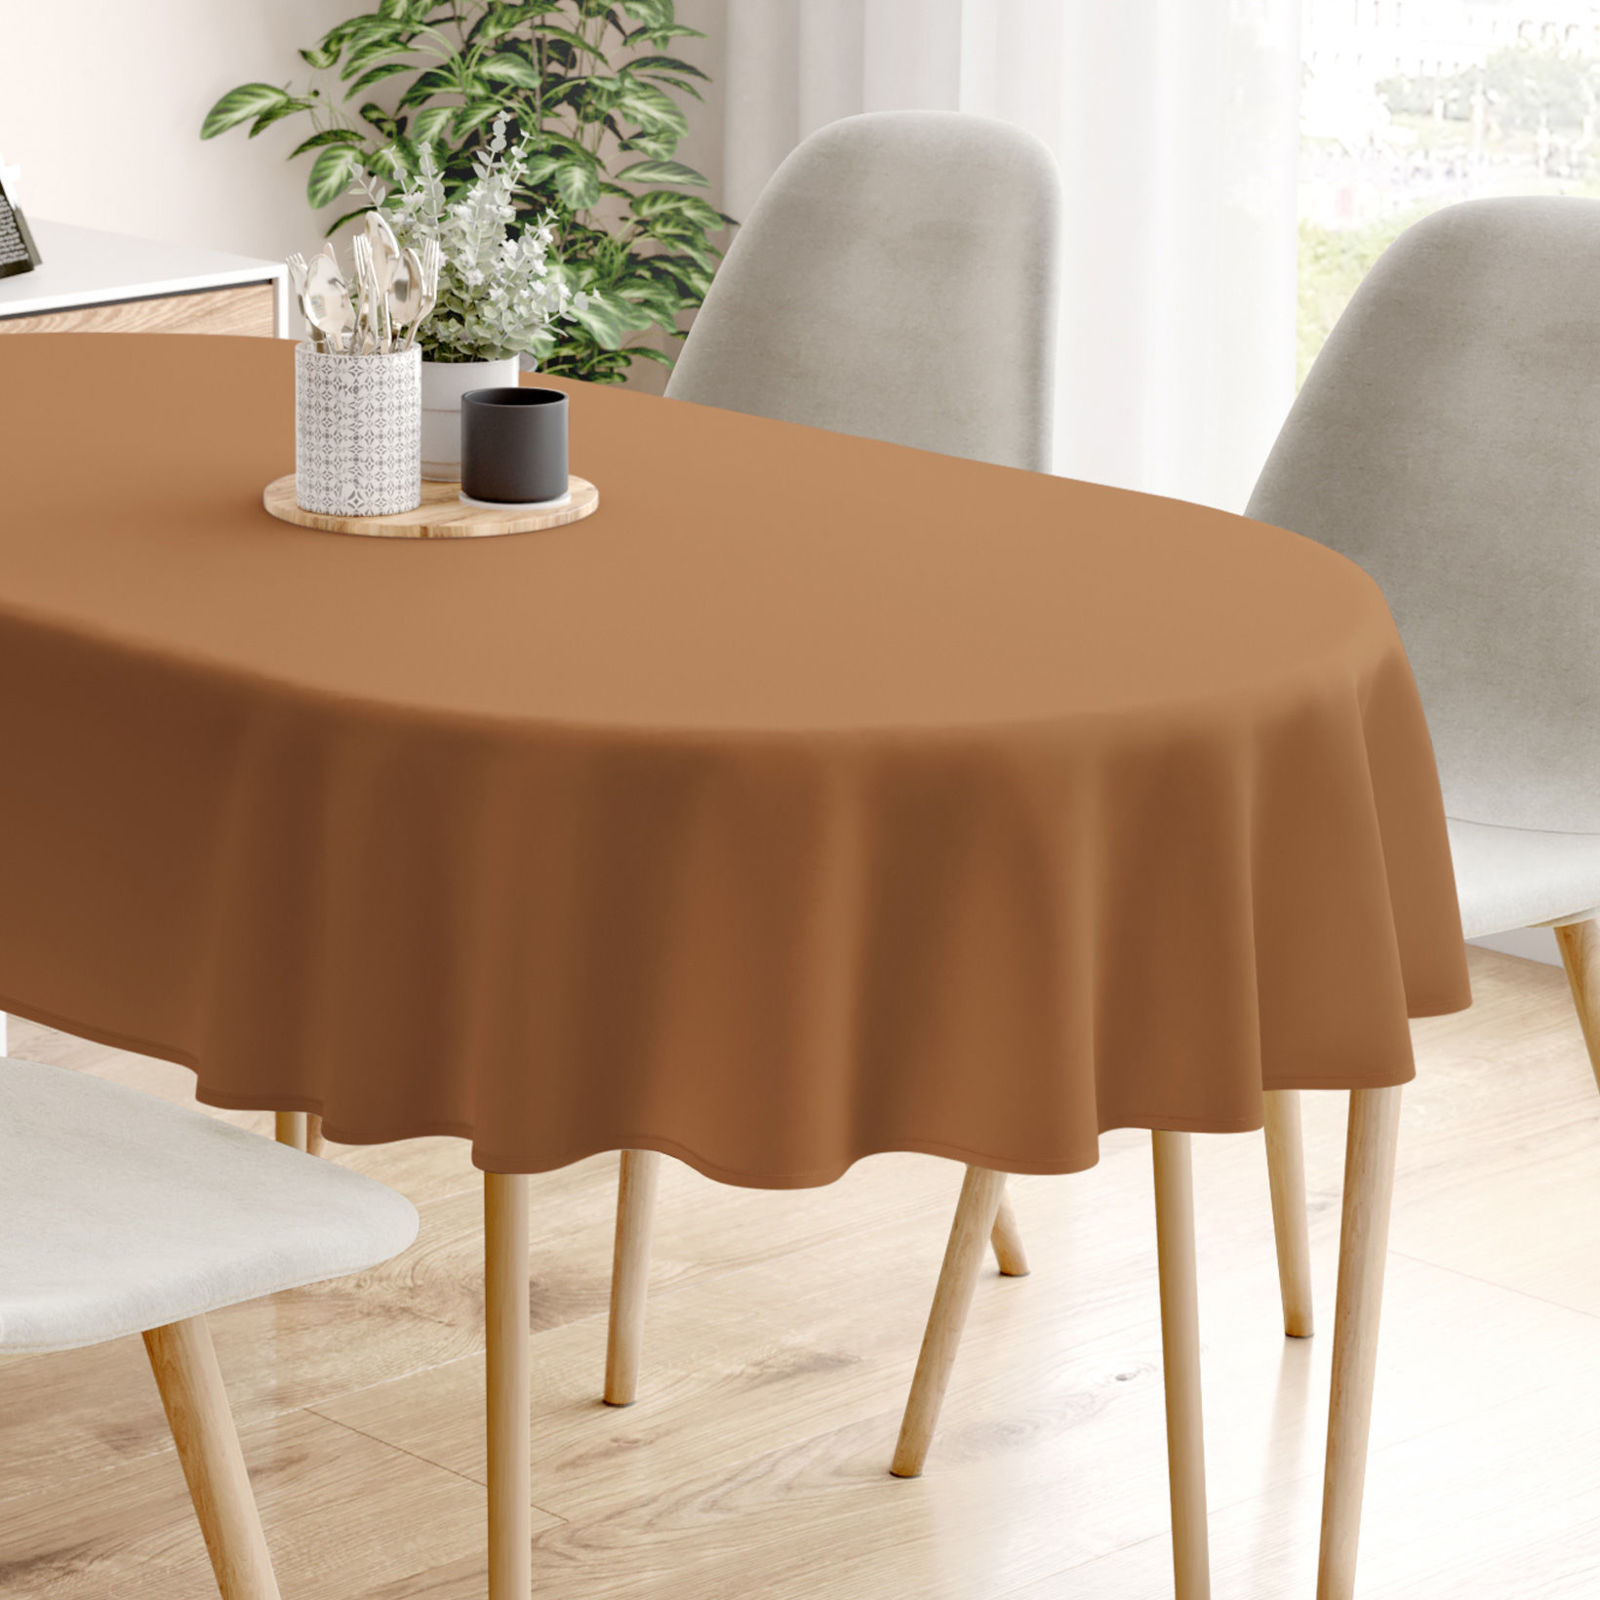 Pamut asztalterítő - fahéj színű - ovális